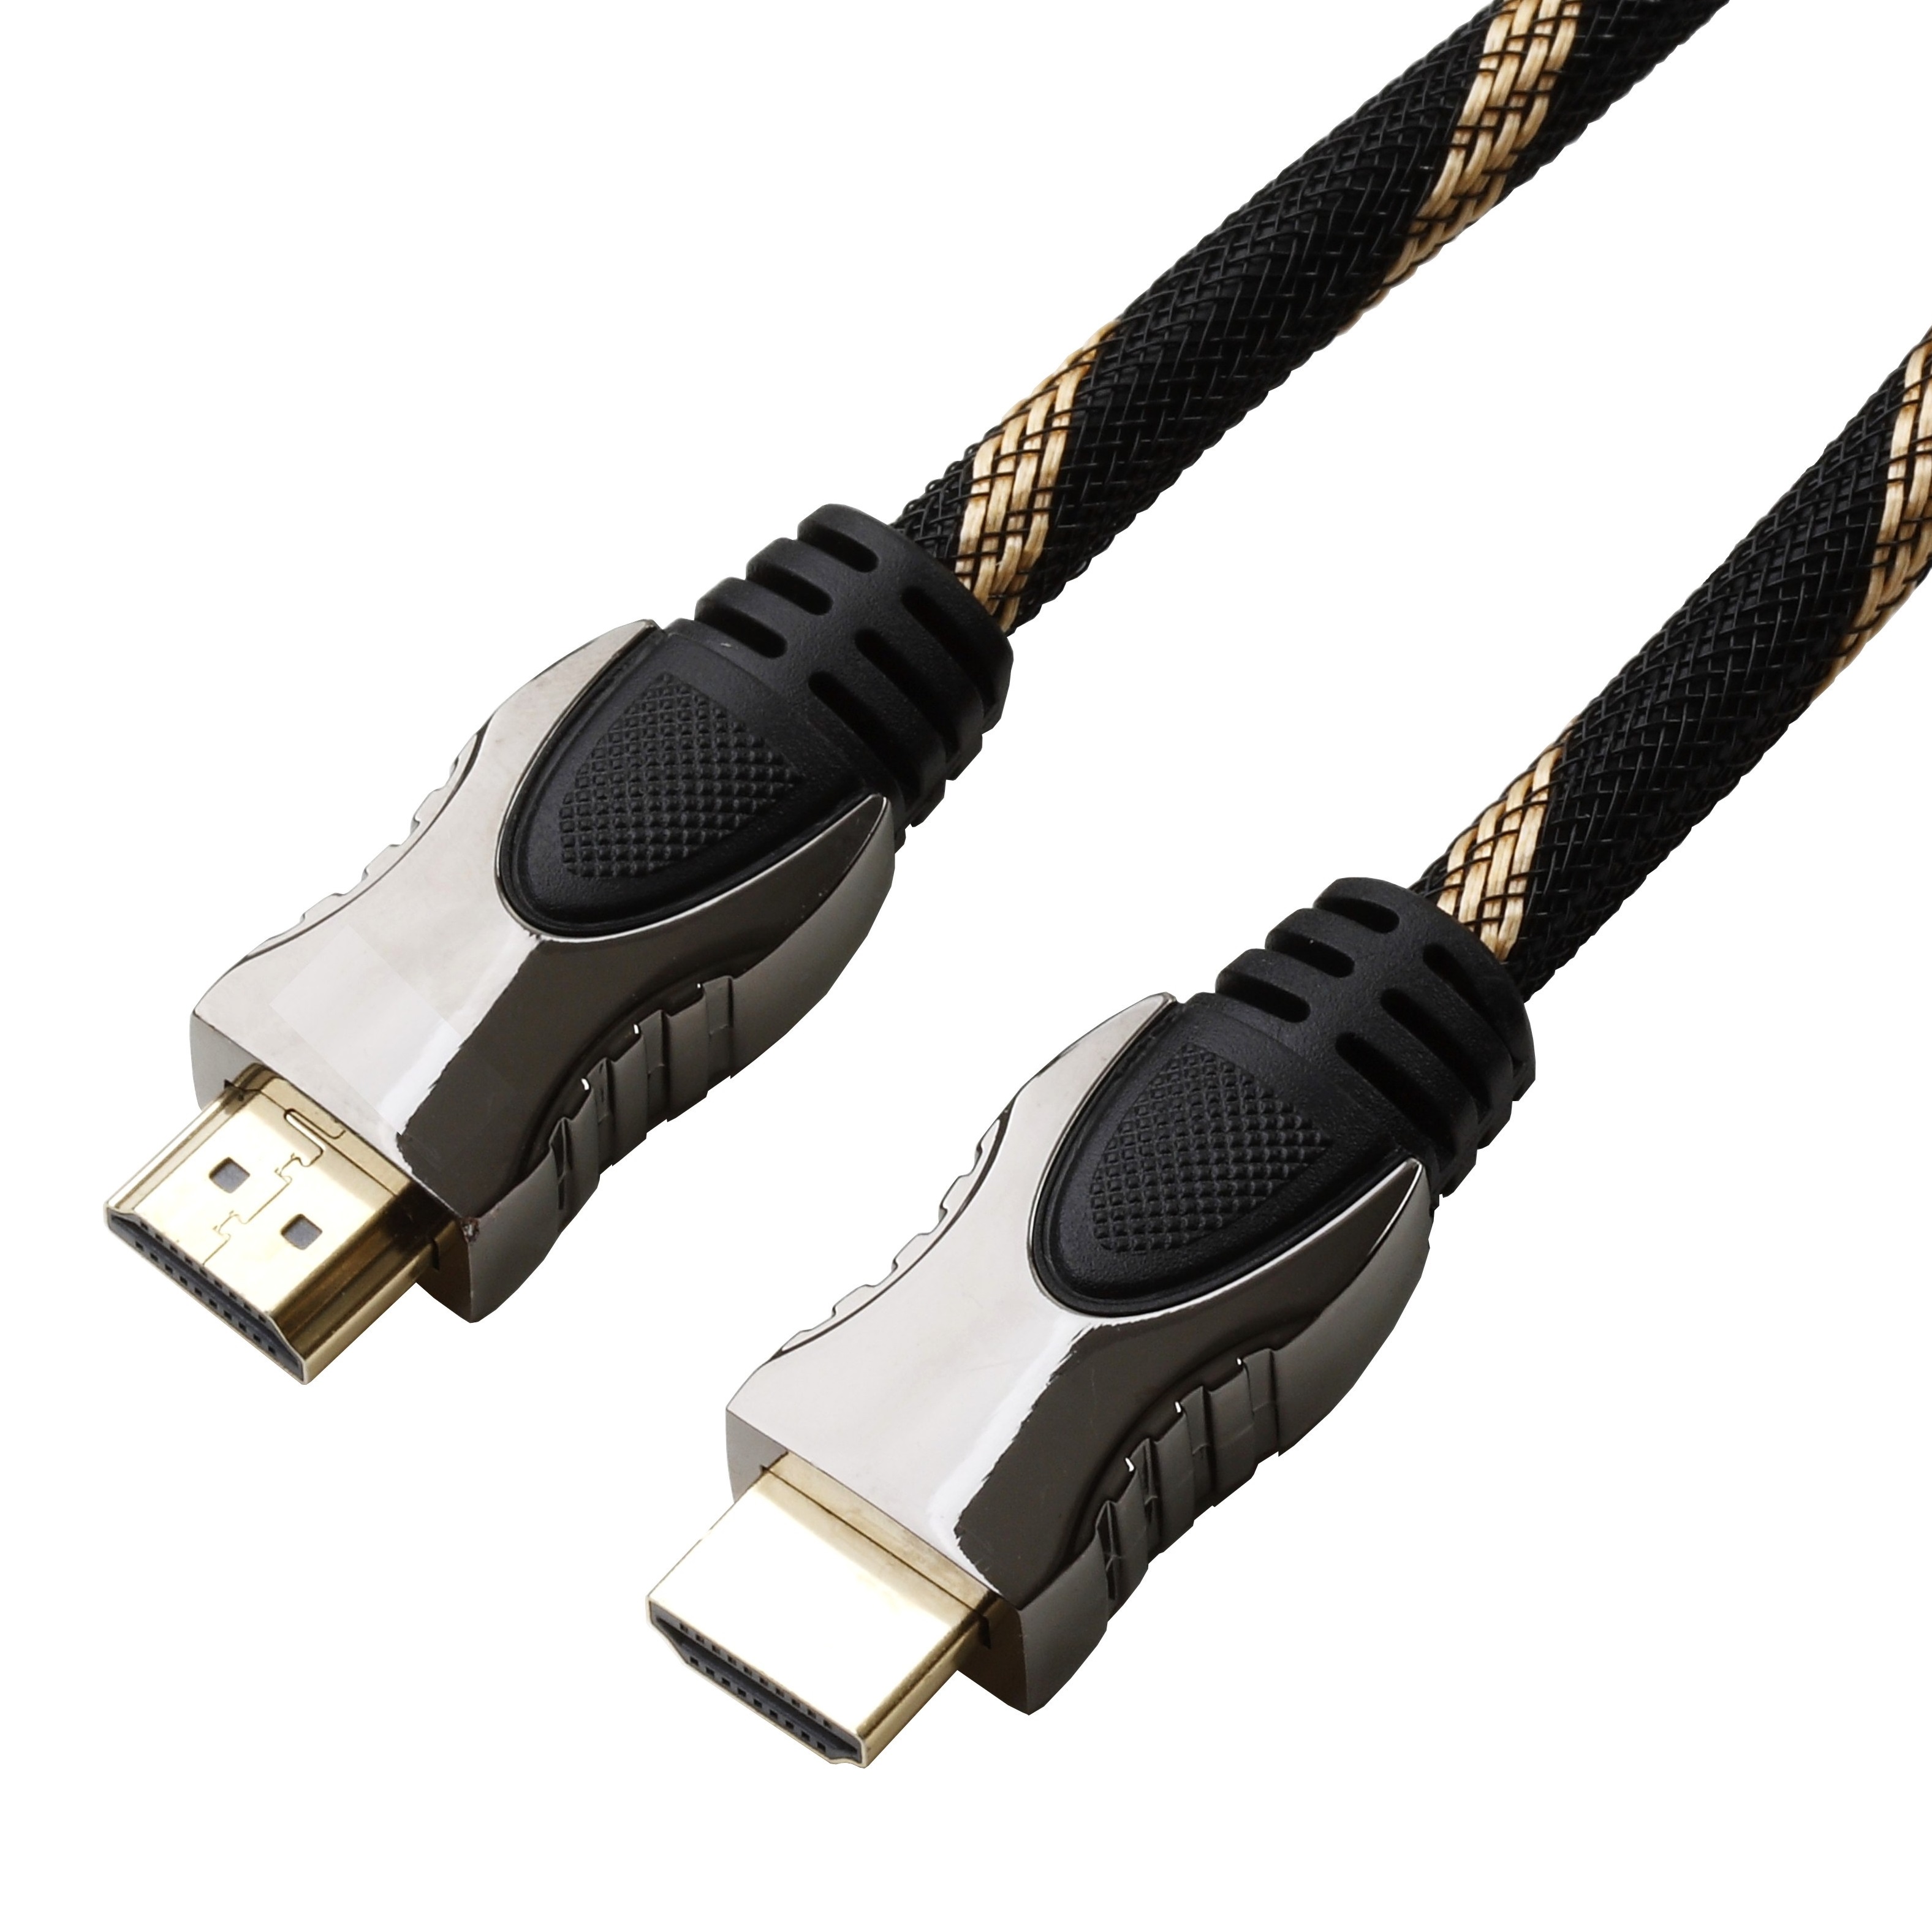 Reekin HDMI Kabel FULL HD High Speed with Ethernet 15,0 Meter NEU 1,33€/m 